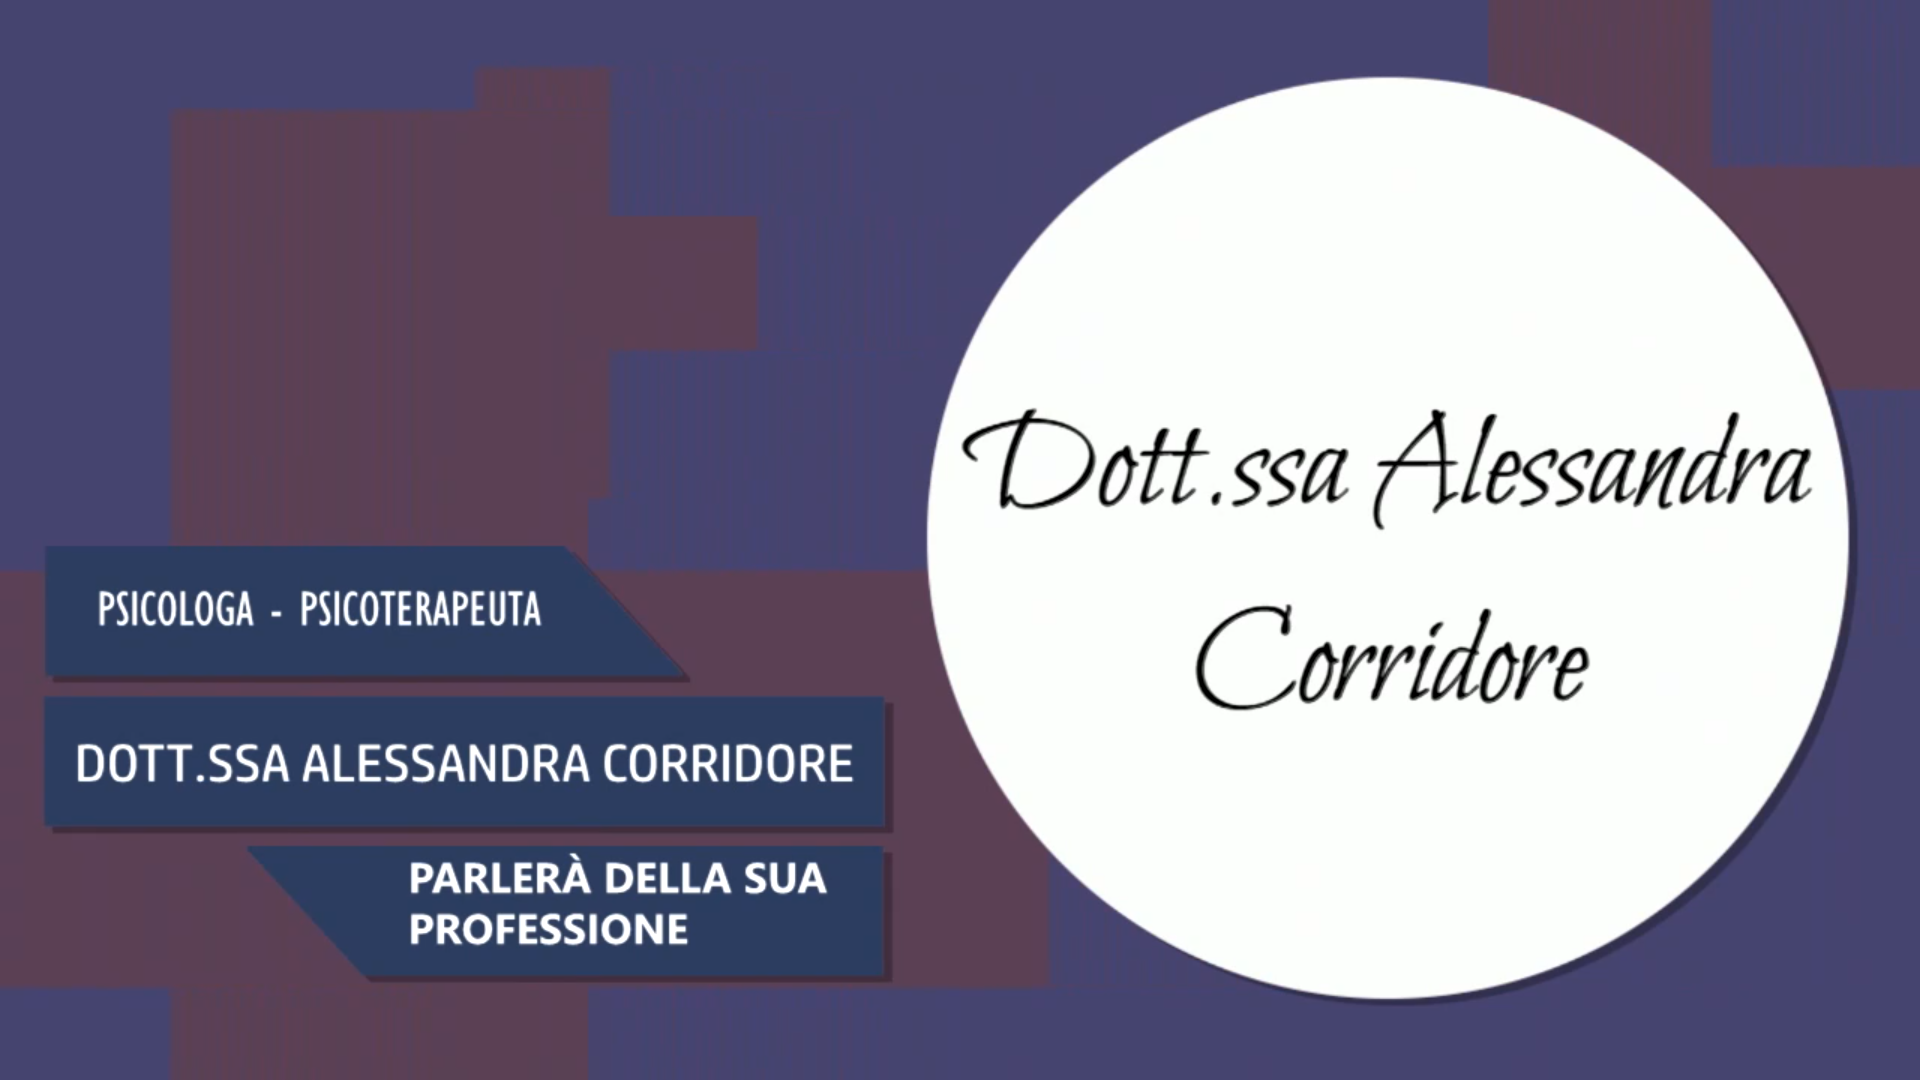 Intervista alla Dott.ssa Alessandra Corridore – Parlerà della sua professione